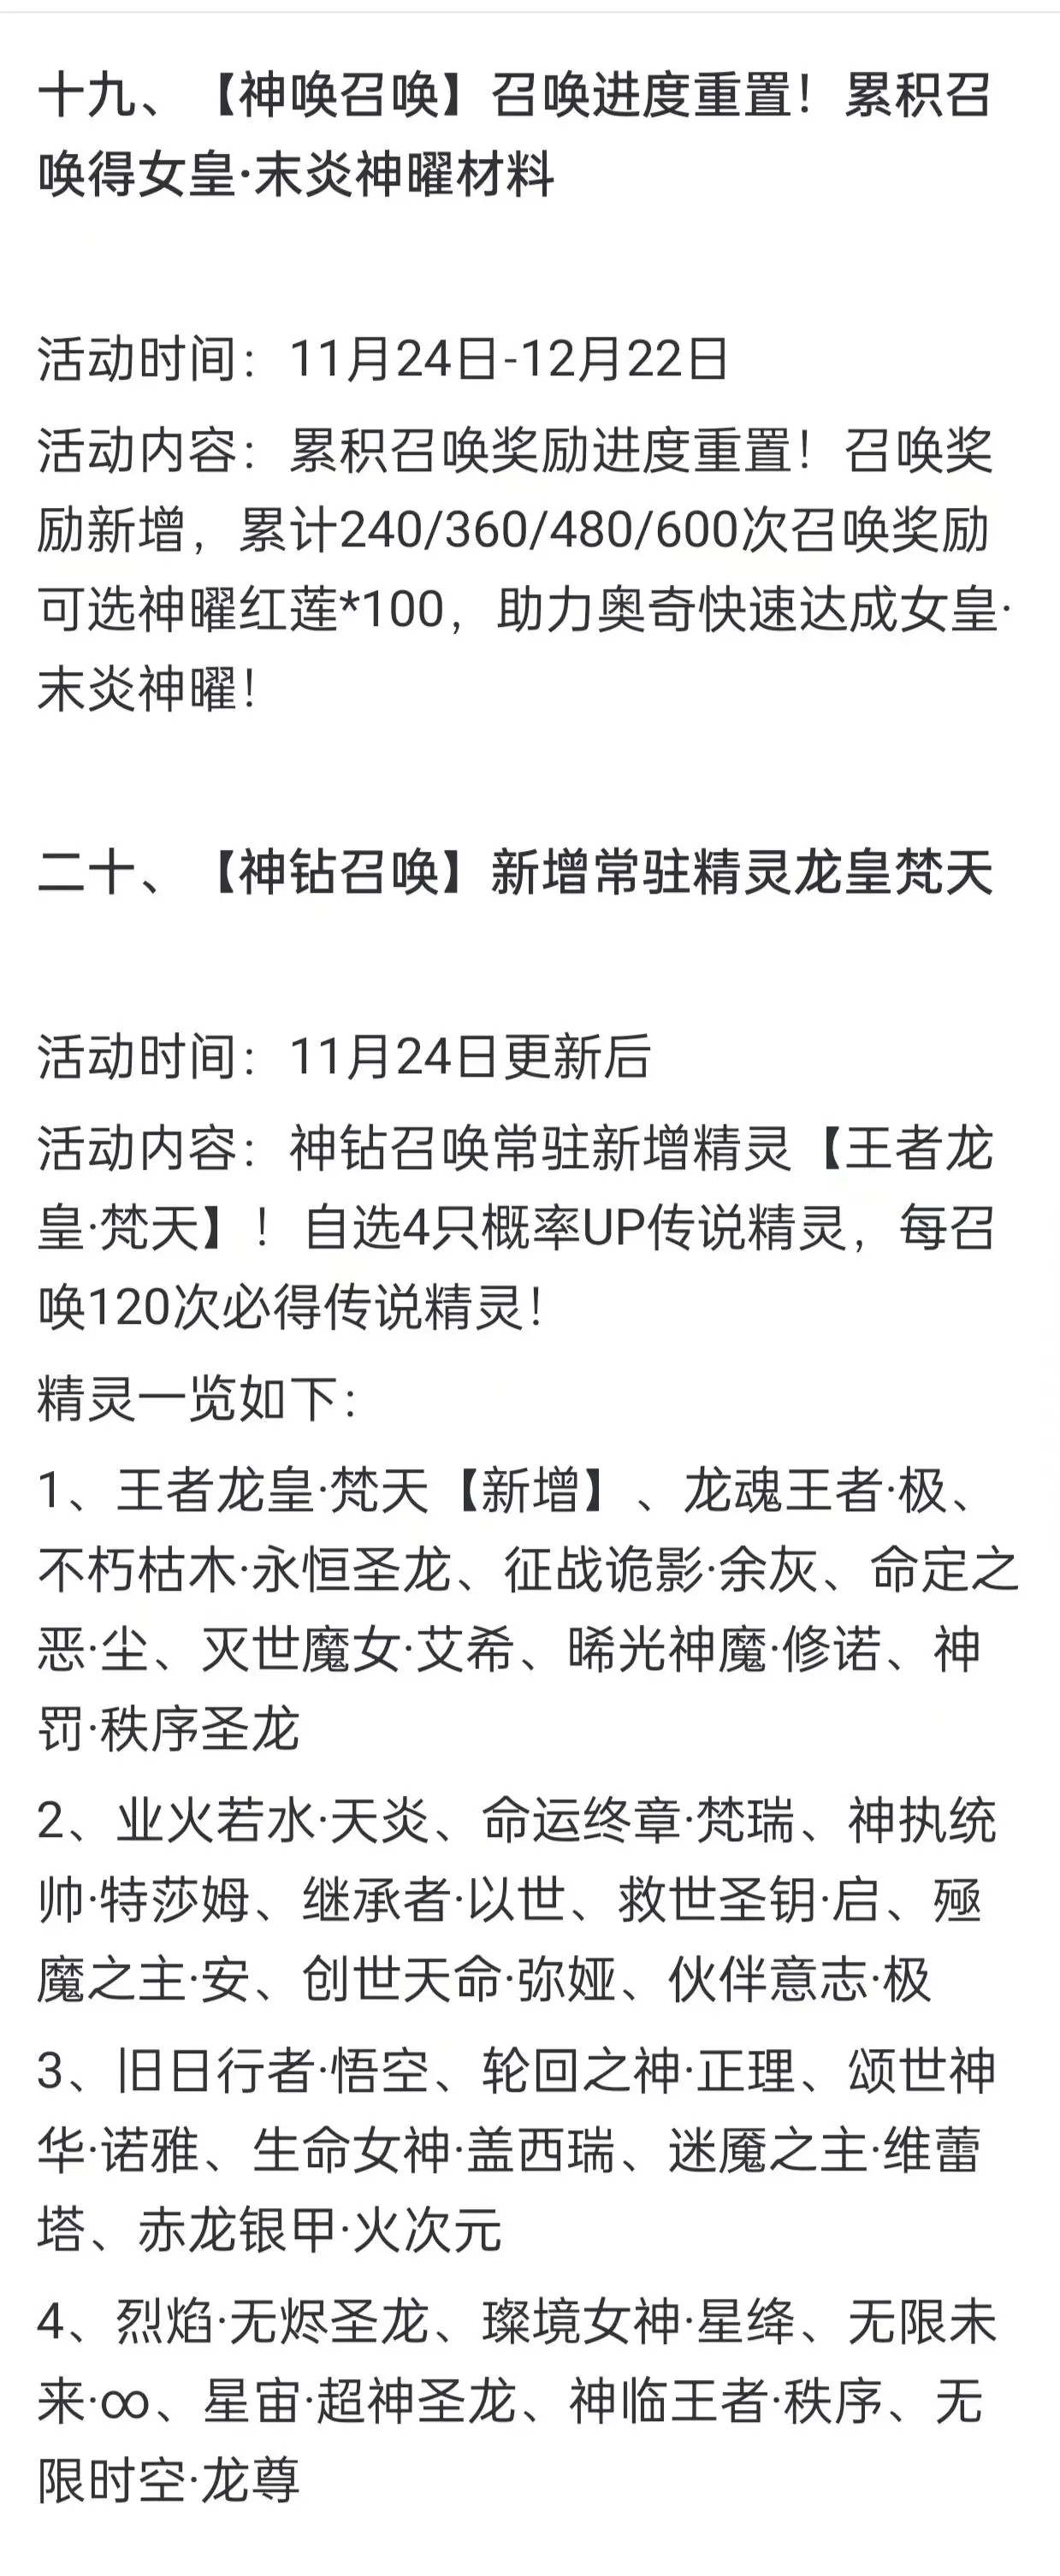 奥奇传说手游更新公告11月24日 奥奇传说手游小诺生日会开启图14